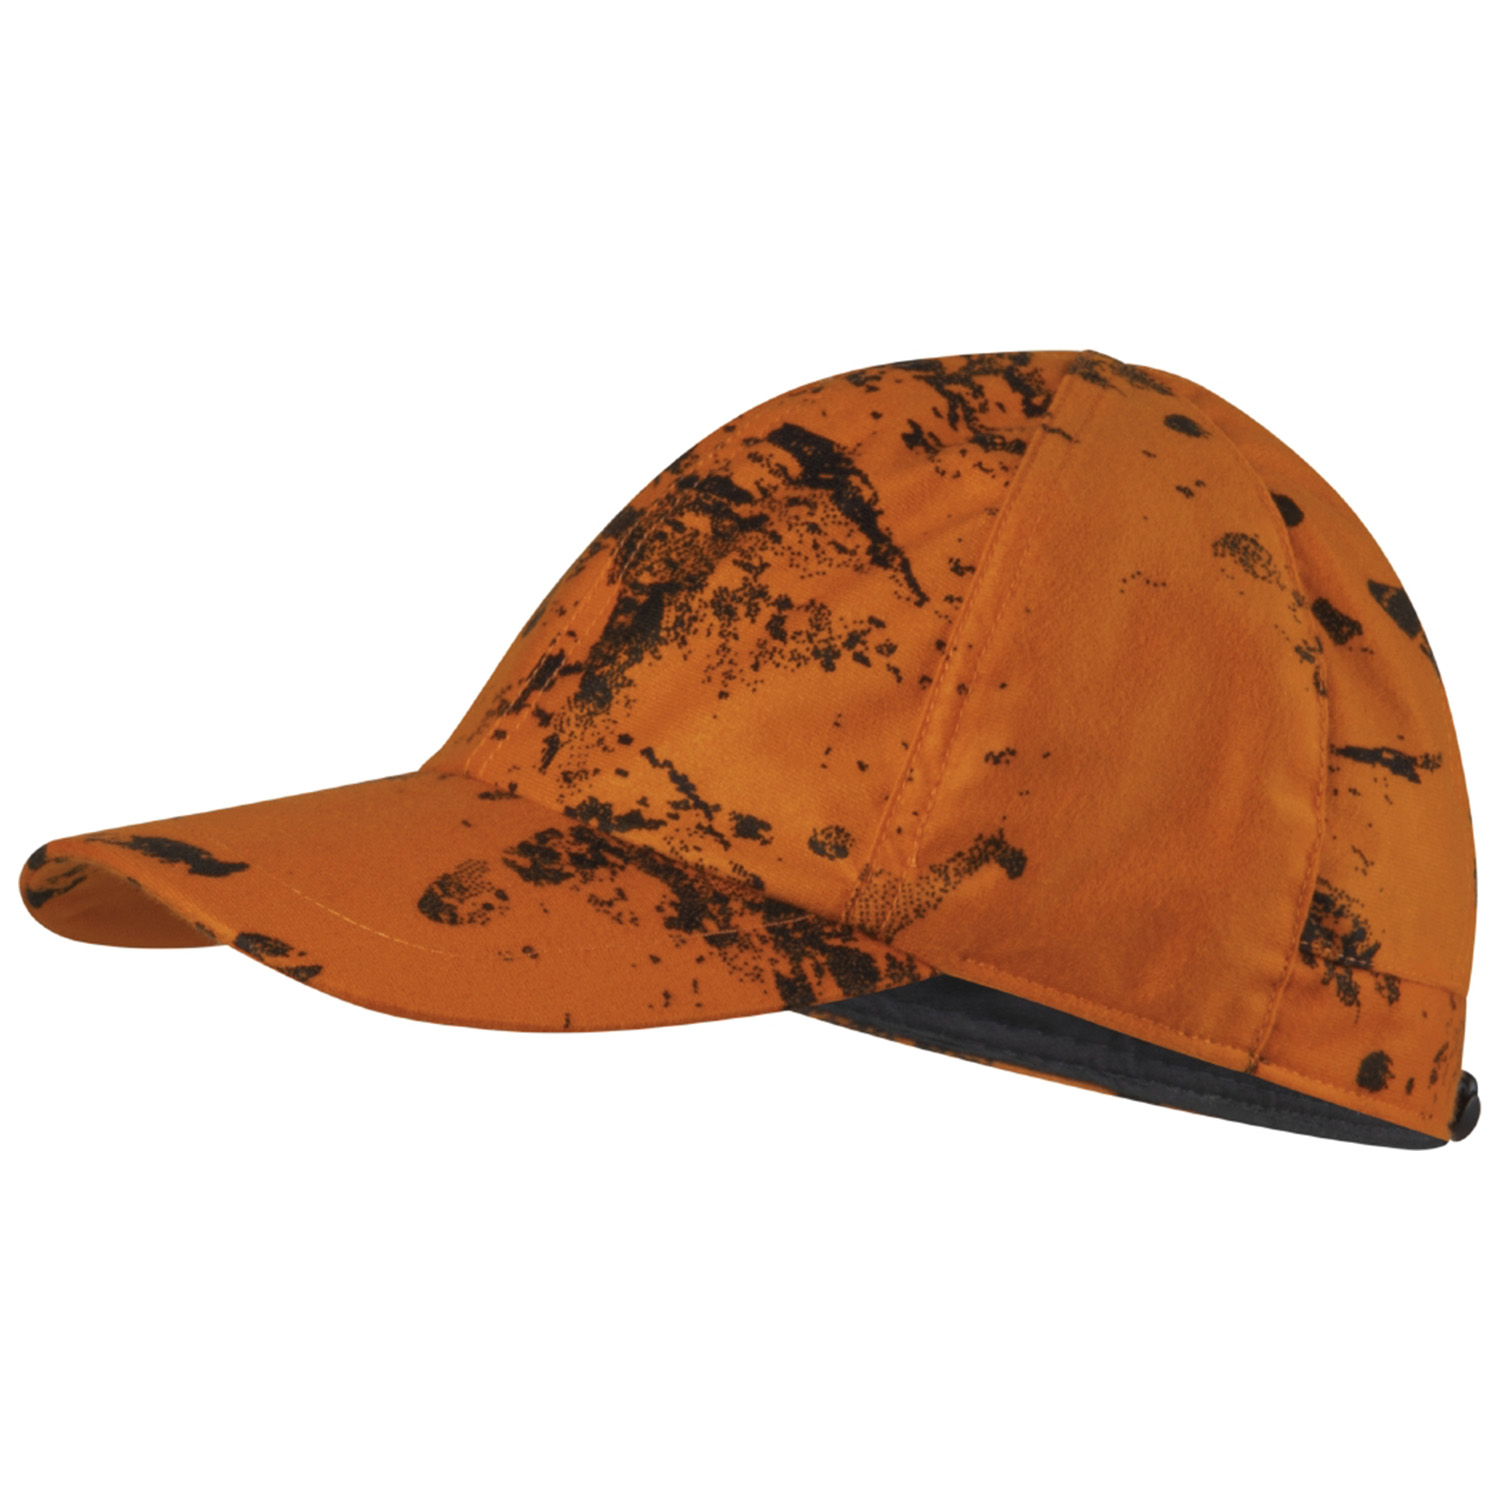  Seeland Cap beschikbaar (InVis Orange Blaze) -  Drijfjacht